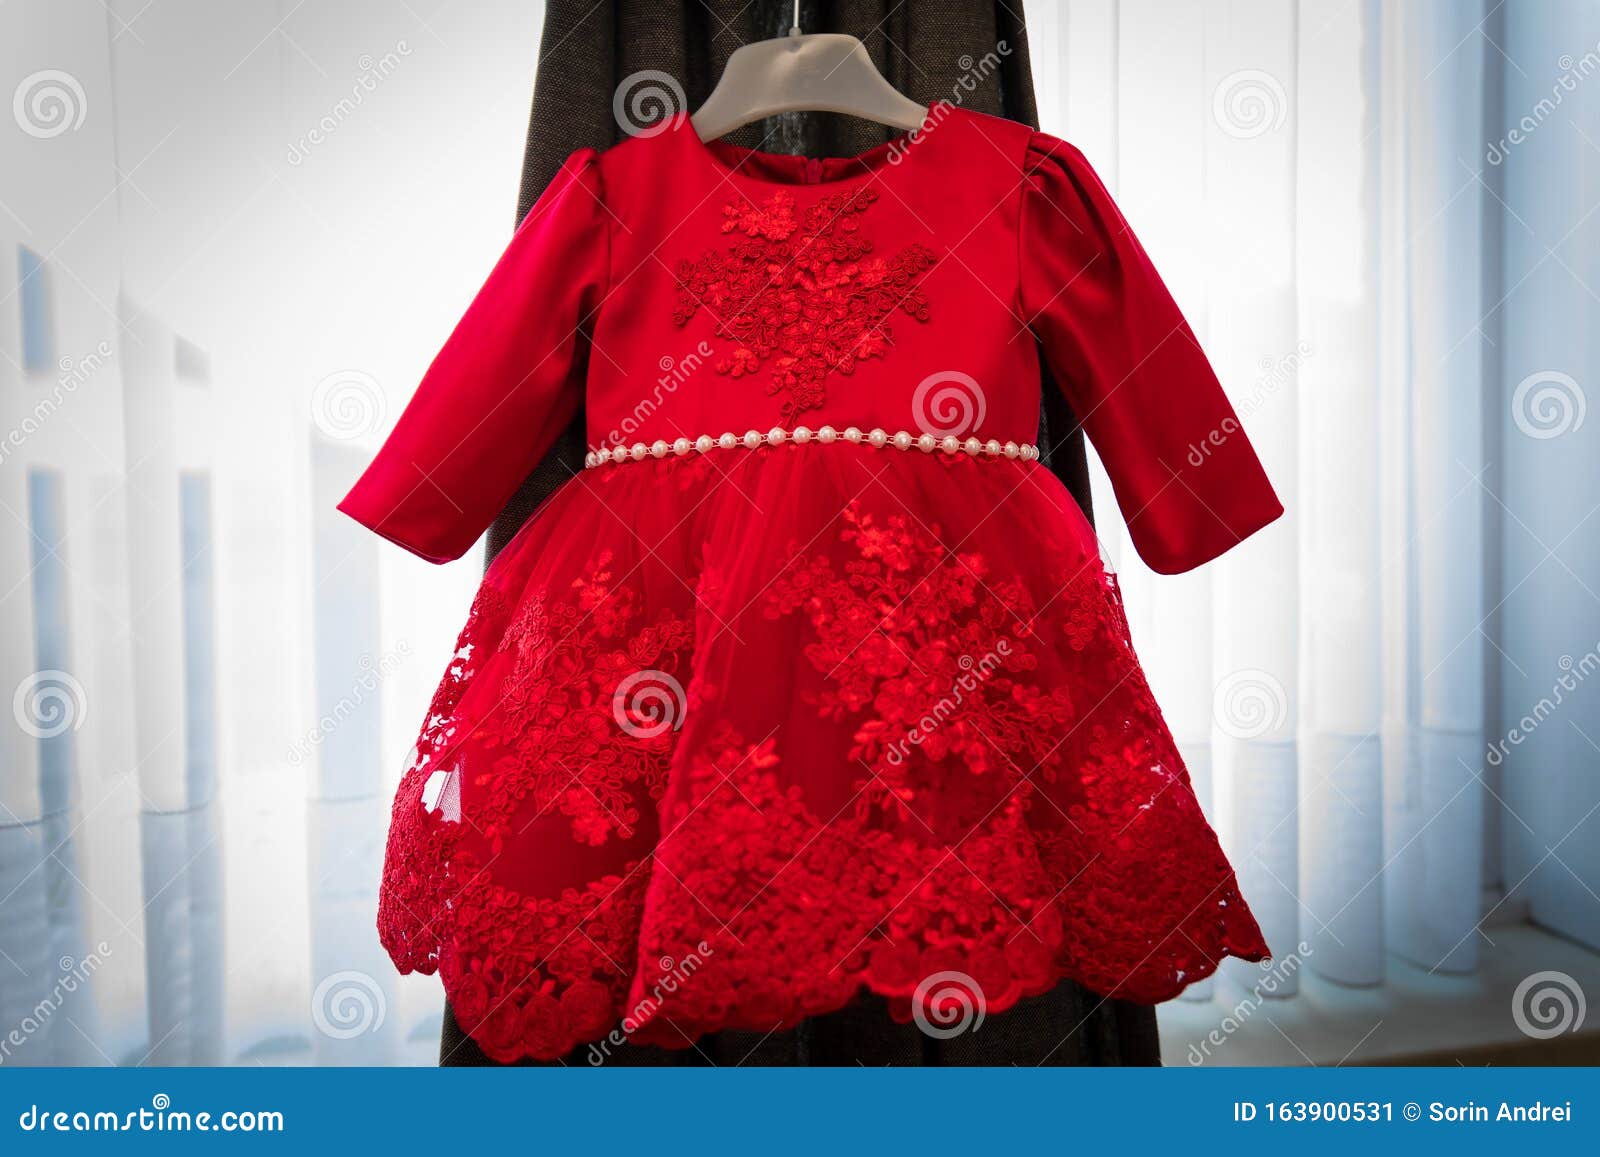 Elegante Vestido Rojo Para Niñas Imagen archivo - Imagen de alineada, bebé: 163900531